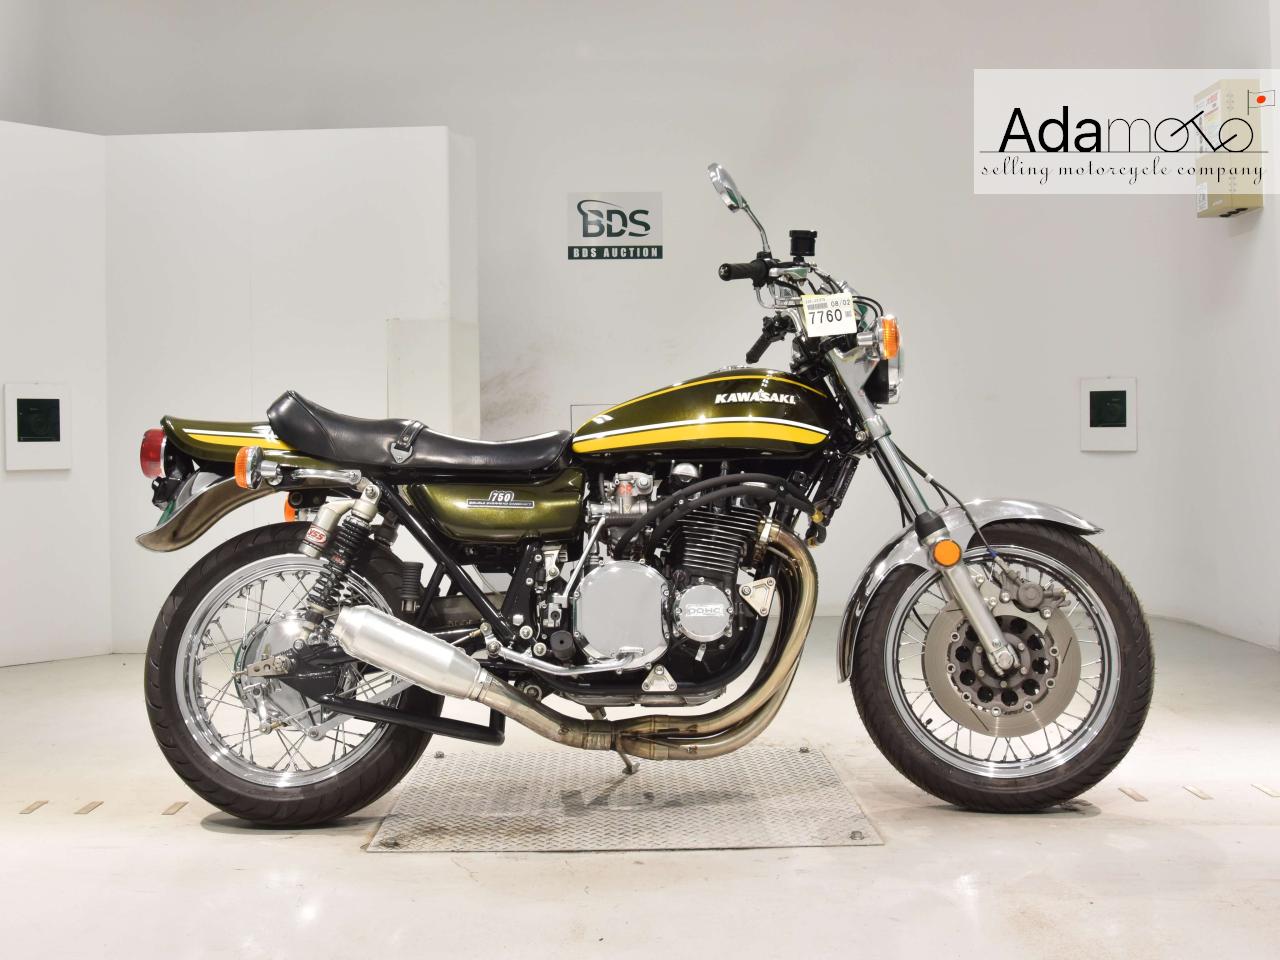 Kawasaki Z2 - Adamoto - Motorcycles from Japan